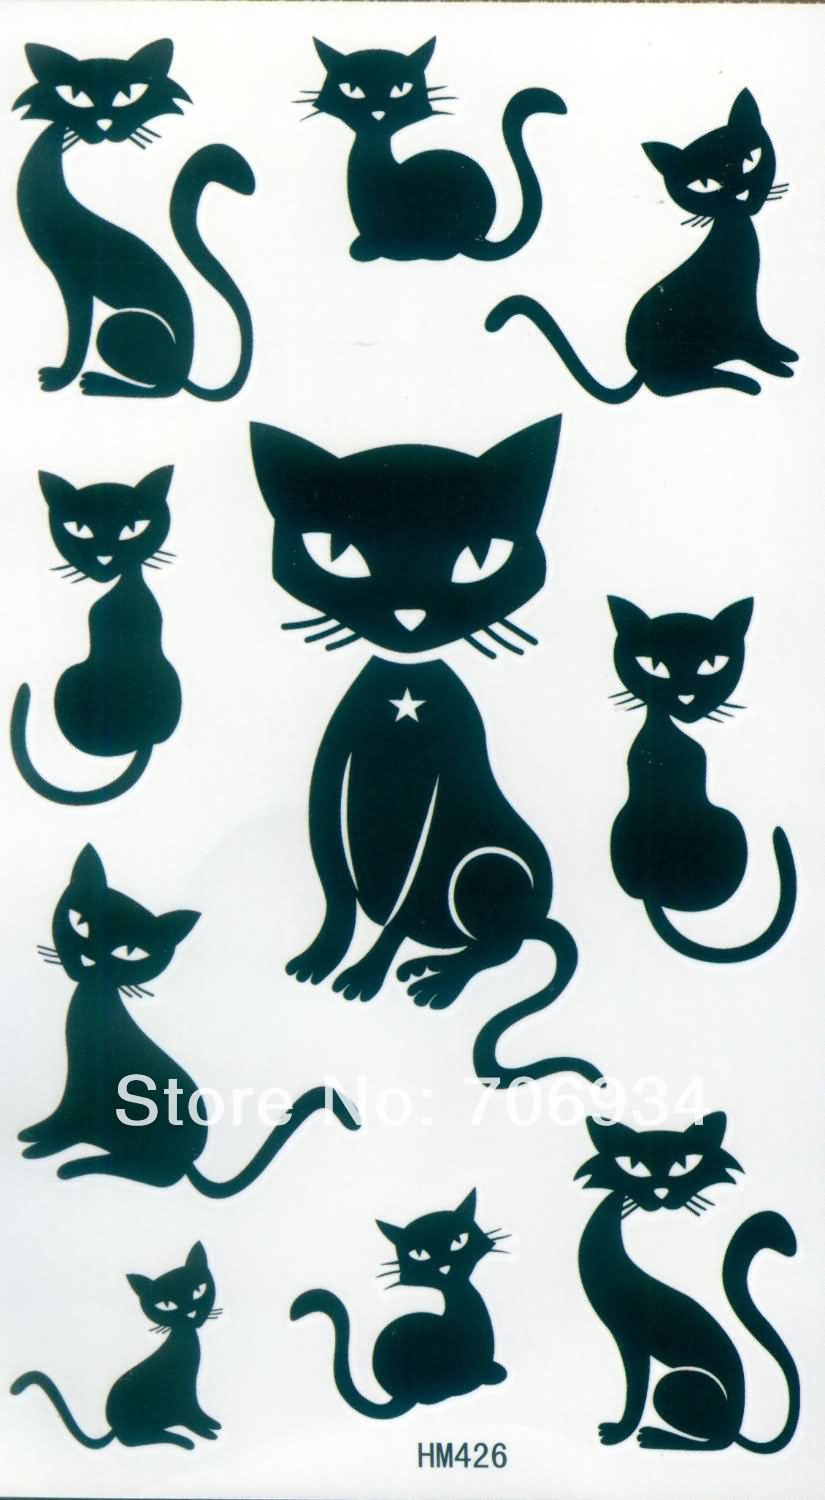 Black Cat Tattoos Designs